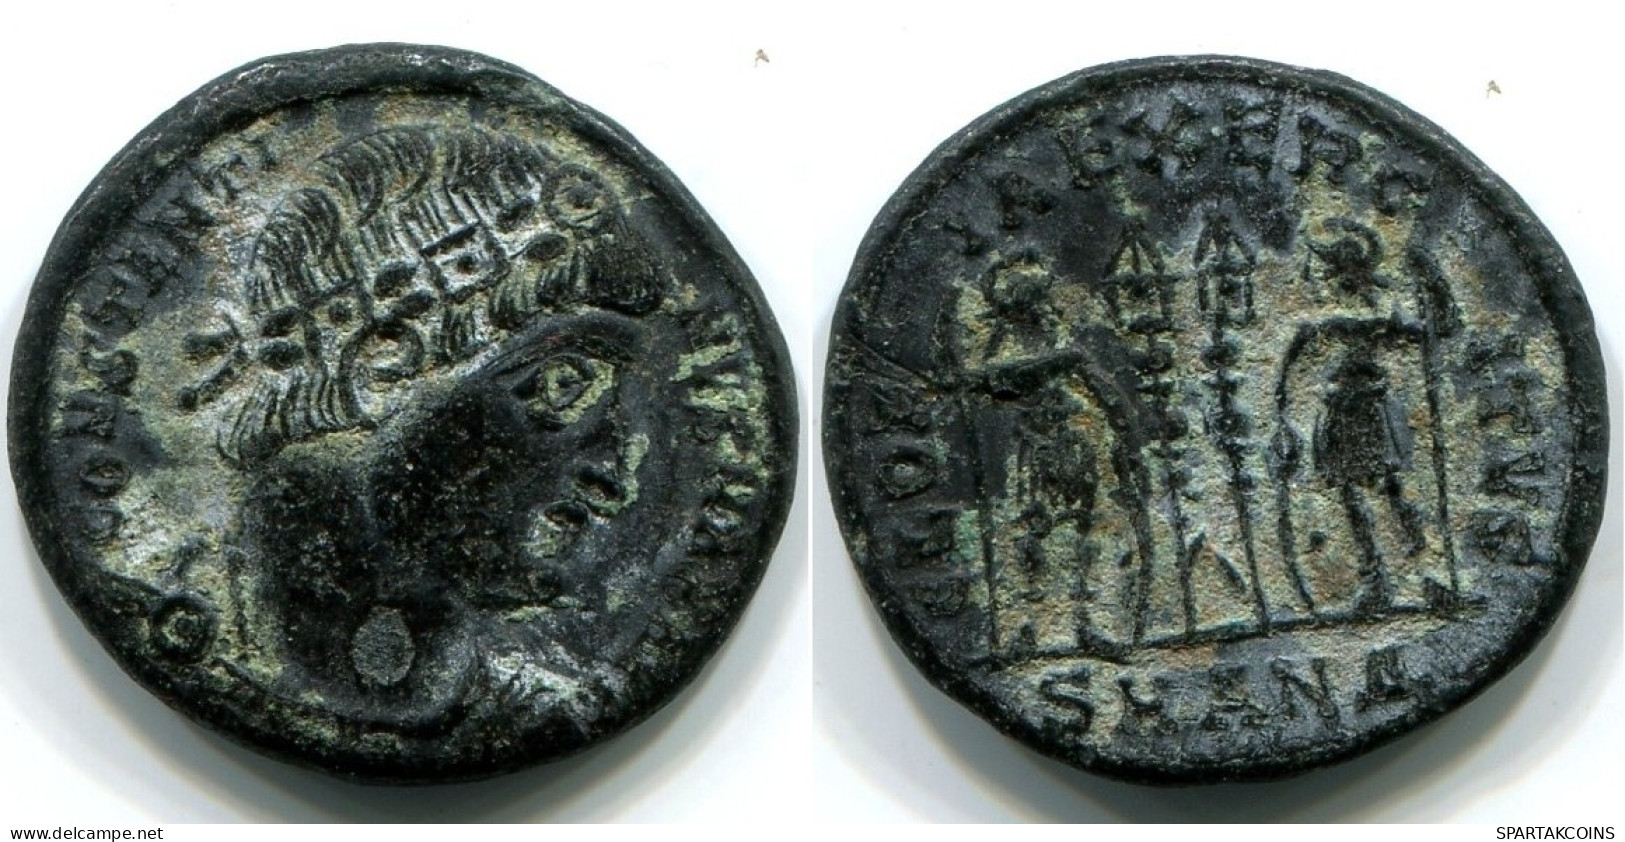 CONSTANTINE I AE SMALL FOLLIS Antike RÖMISCHEN KAISERZEIT Münze #ANC12380.6.D.A - L'Empire Chrétien (307 à 363)